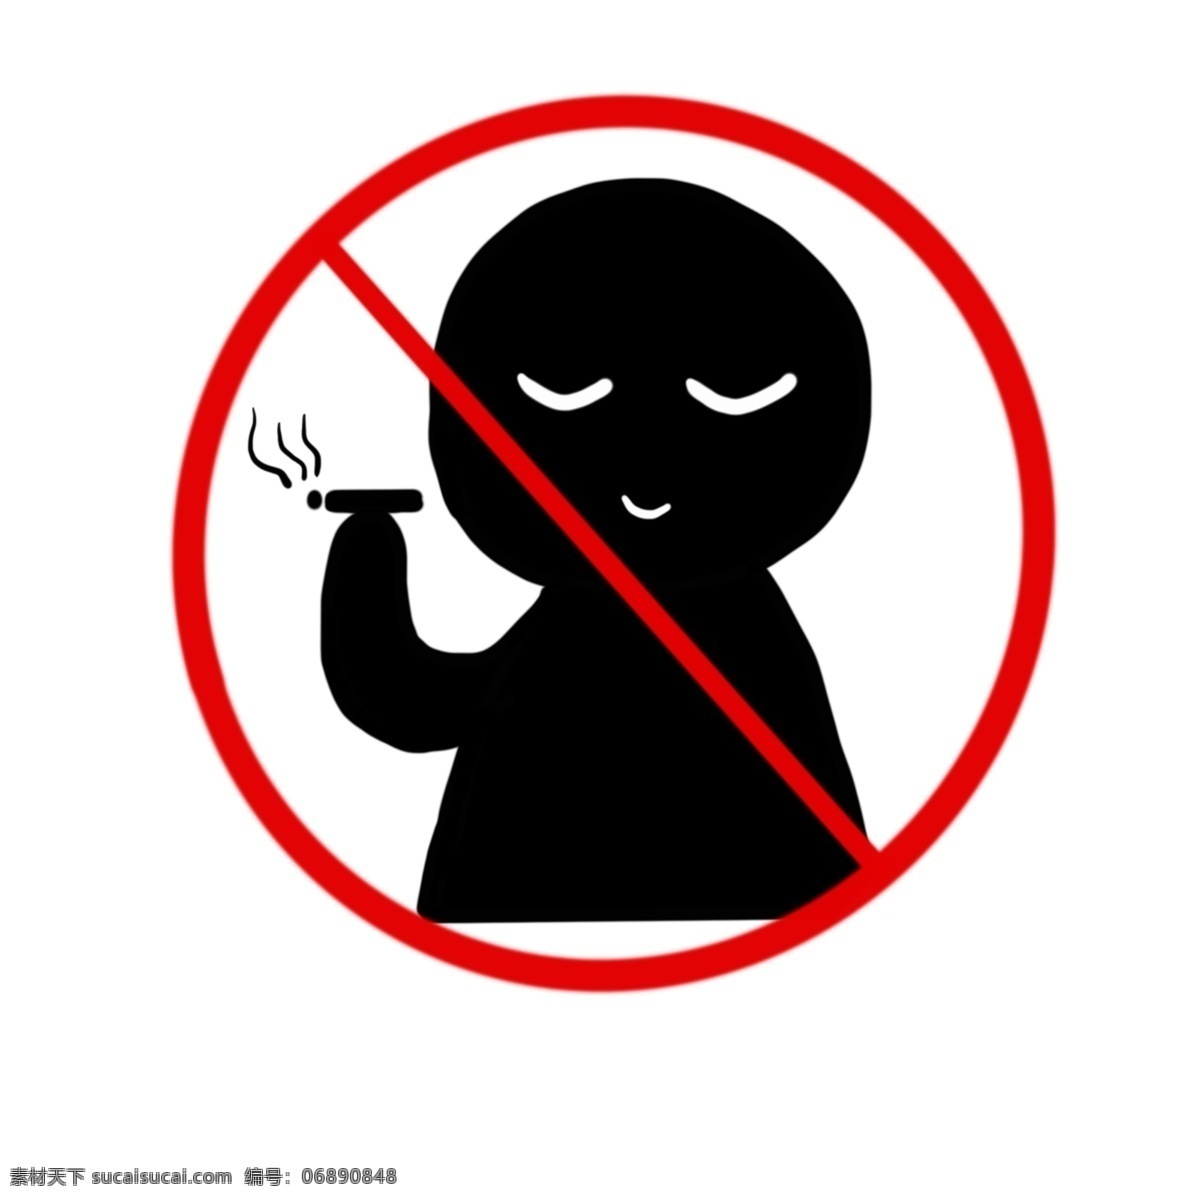 禁止 吸烟 警示牌 插画 红色的警示牌 漂亮的警示牌 圆形警示牌 立体警示牌 卡通警示牌